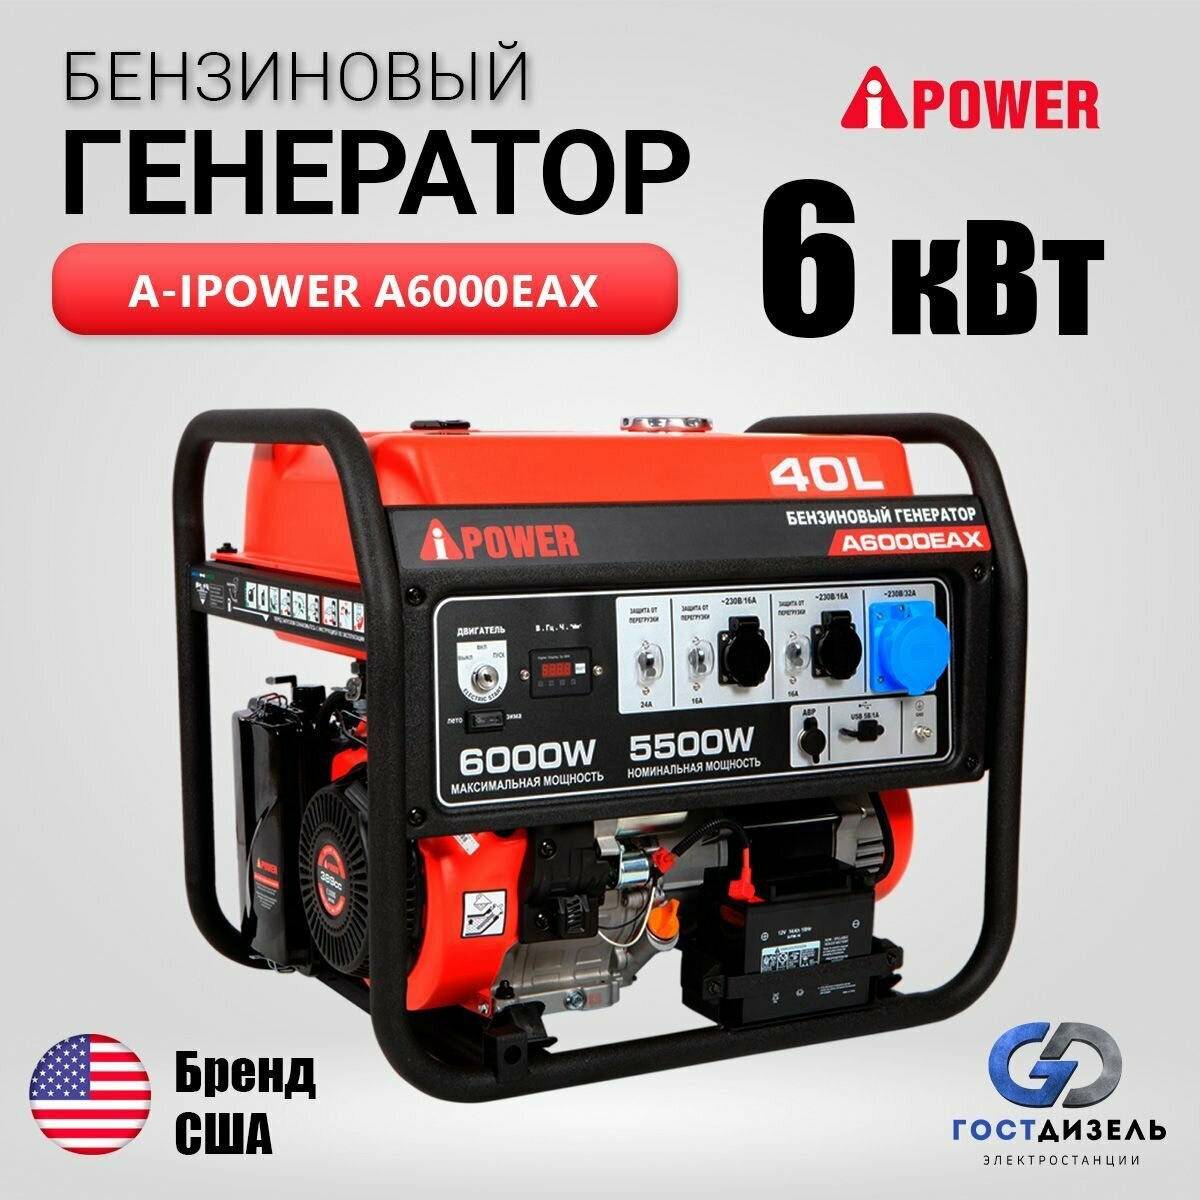 Генератор бензиновый A-iPower A6000EAX (6 кВт/230В) электрозапуск, выдерживает 9.4 кВА пусковой мощности. Генератор для дома